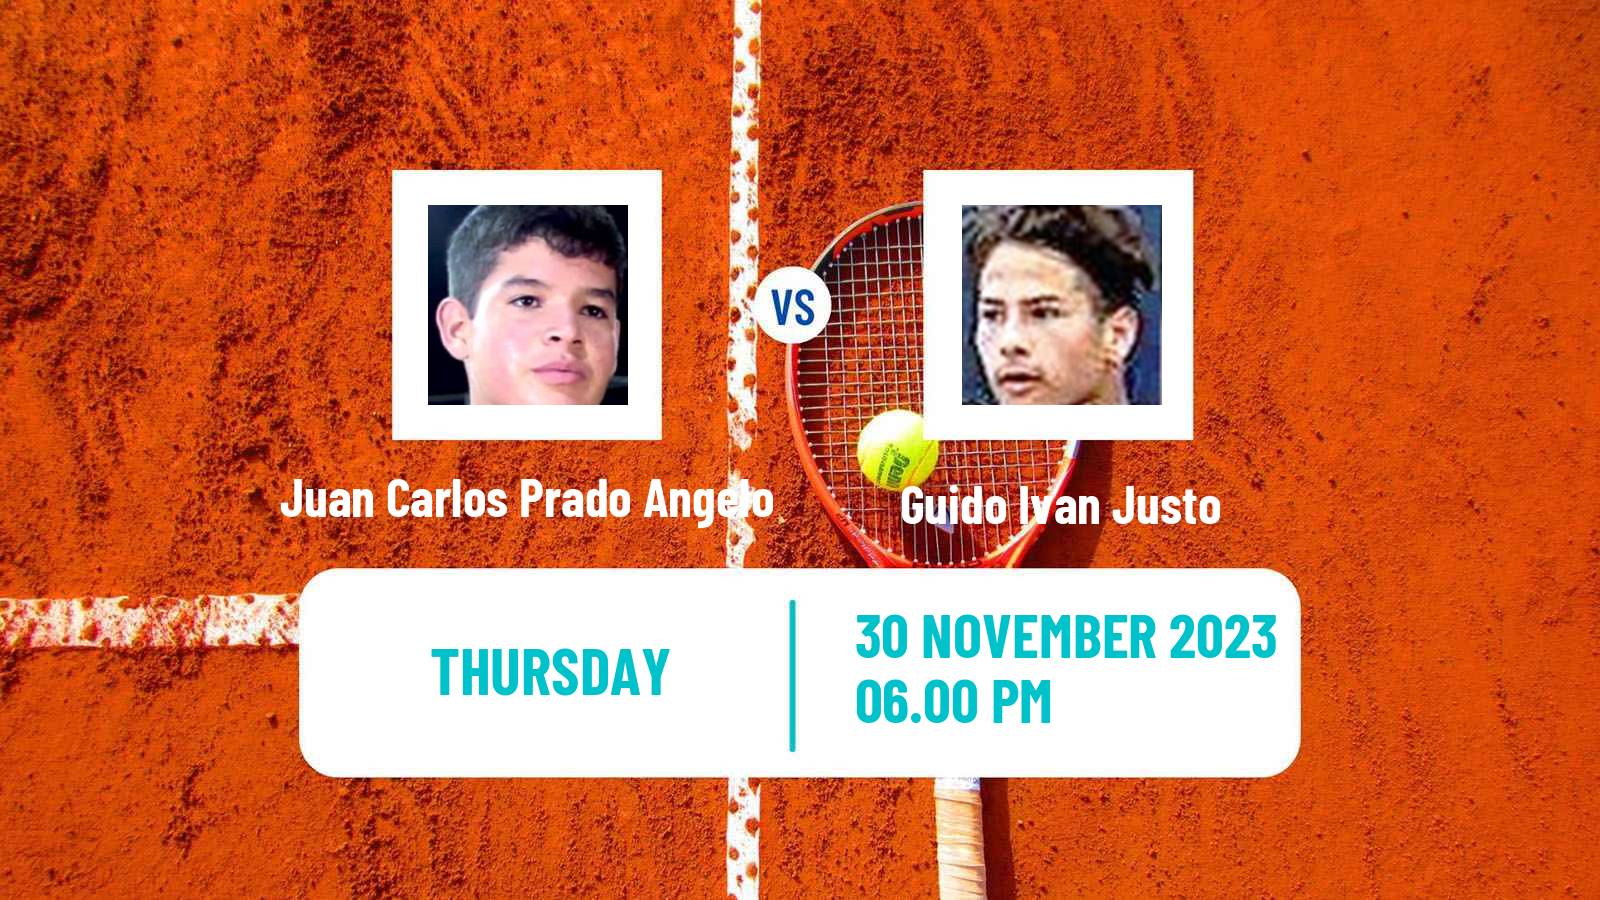 Tennis ITF M15 Santa Cruz 2 Men Juan Carlos Prado Angelo - Guido Ivan Justo